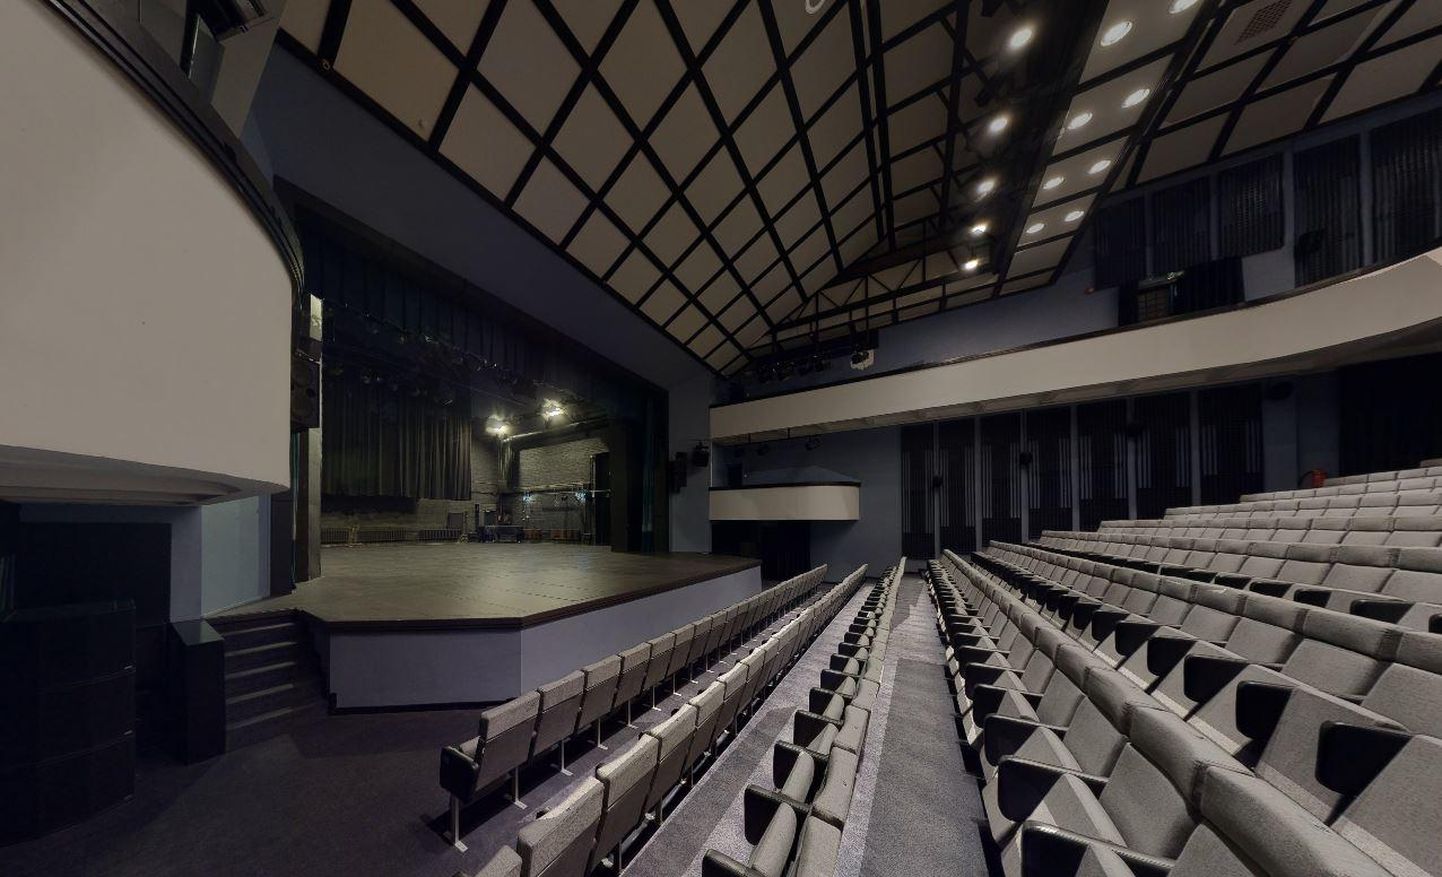 Paide muusika- ja teatrimaja on üks paarikümnest Eesti kultuuriasutusest, kus saab nüüd ette võtta virtuaaltuuri, mis annab ruumist täpsema ülevaate ja võimaldab erinevaid detaile mõõta.